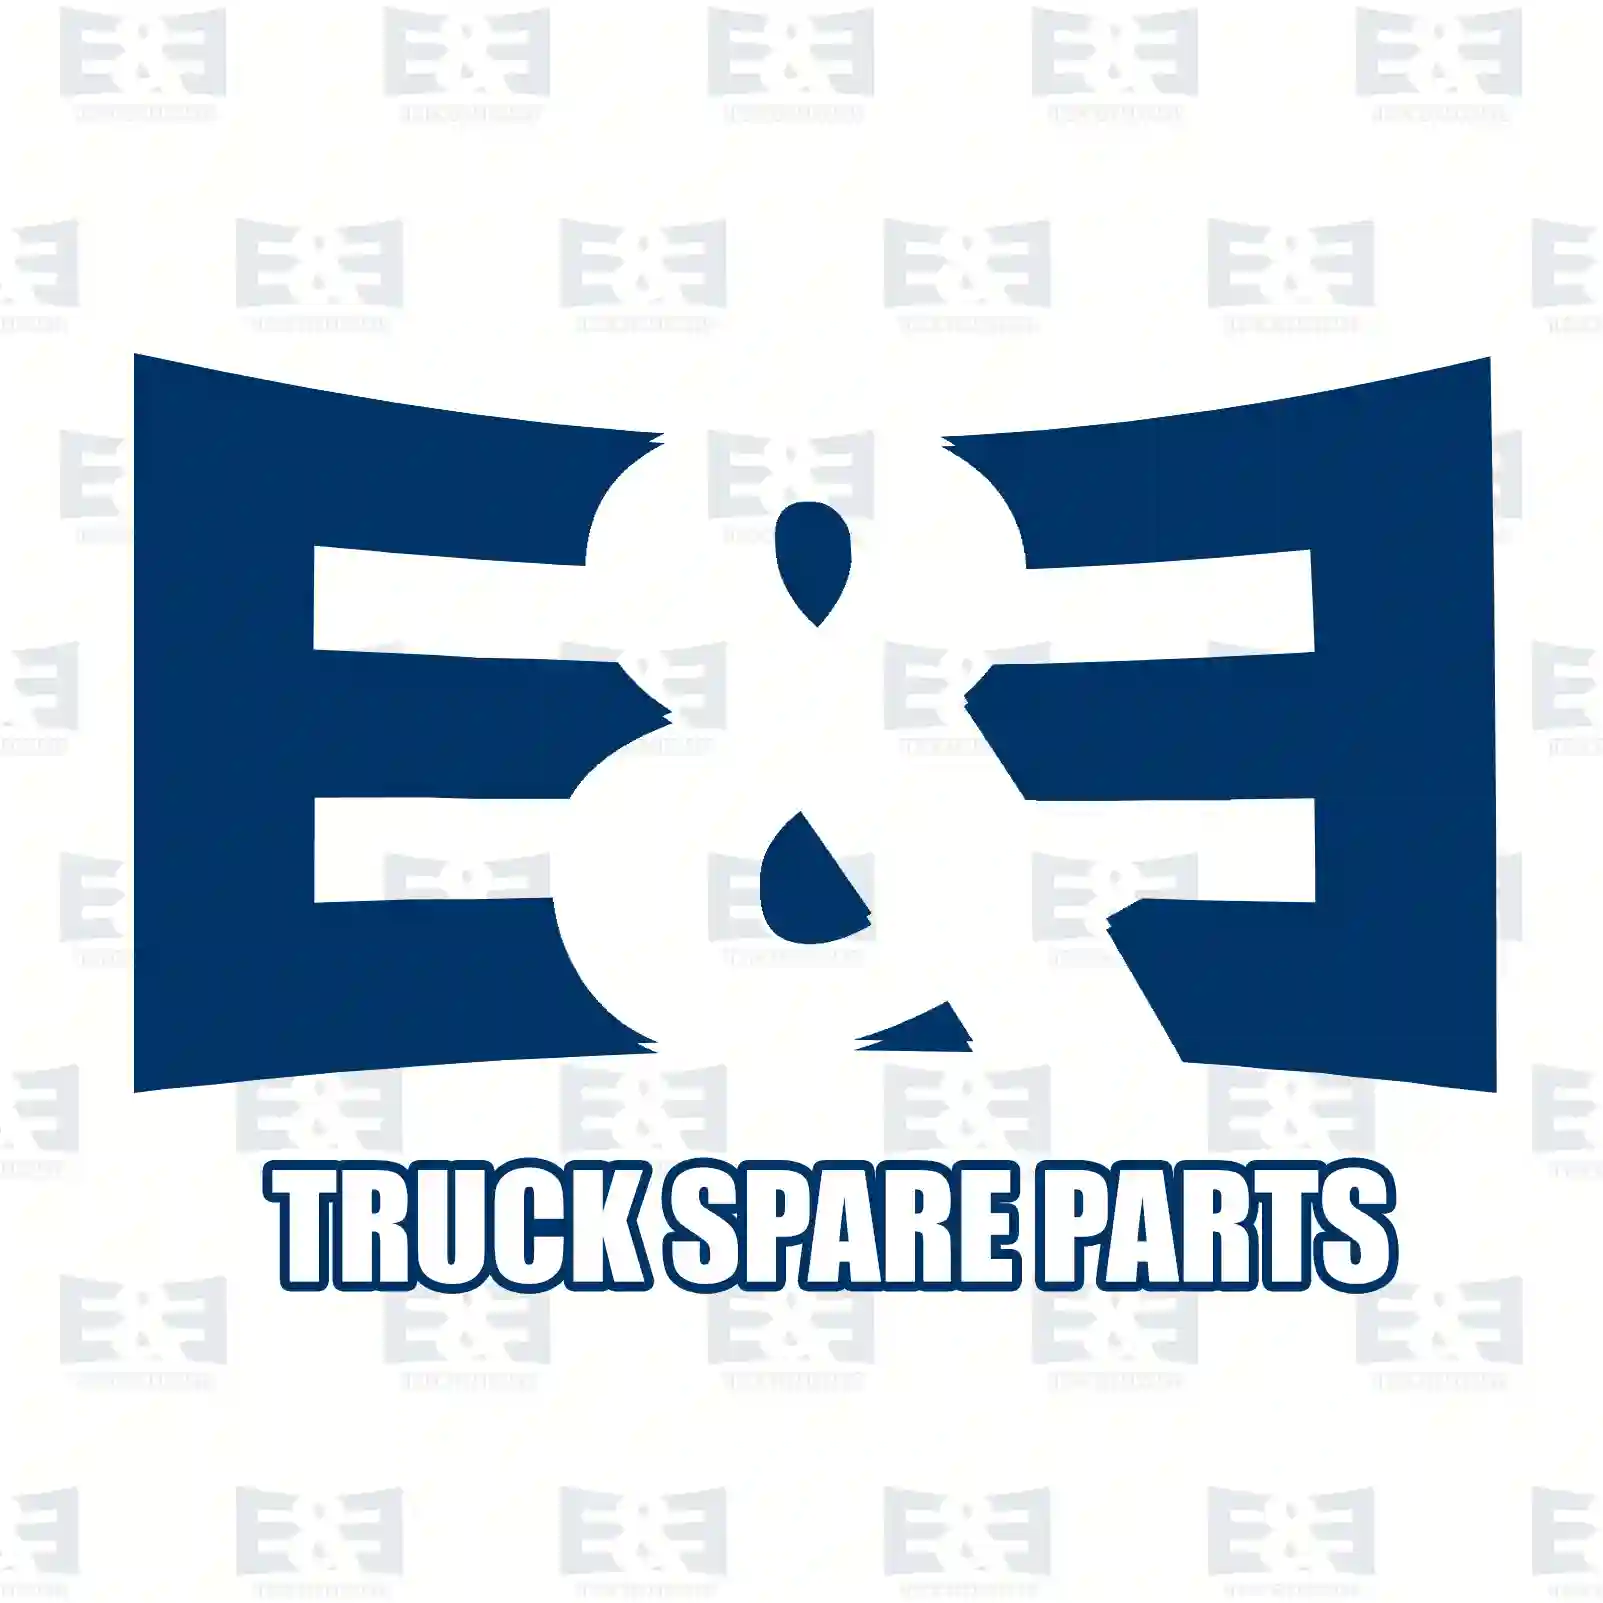 Multiribbed belt, 2E2285771, 021145933C, 7198535, 31110-PRA-013, 31110-RSP-G11, 0119976992, 11950-60U05, 021145933C, 021145933C, 021145933A, 021145933B, 021145933C, 021145933G, 022145933F ||  2E2285771 E&E Truck Spare Parts | Truck Spare Parts, Auotomotive Spare Parts Multiribbed belt, 2E2285771, 021145933C, 7198535, 31110-PRA-013, 31110-RSP-G11, 0119976992, 11950-60U05, 021145933C, 021145933C, 021145933A, 021145933B, 021145933C, 021145933G, 022145933F ||  2E2285771 E&E Truck Spare Parts | Truck Spare Parts, Auotomotive Spare Parts